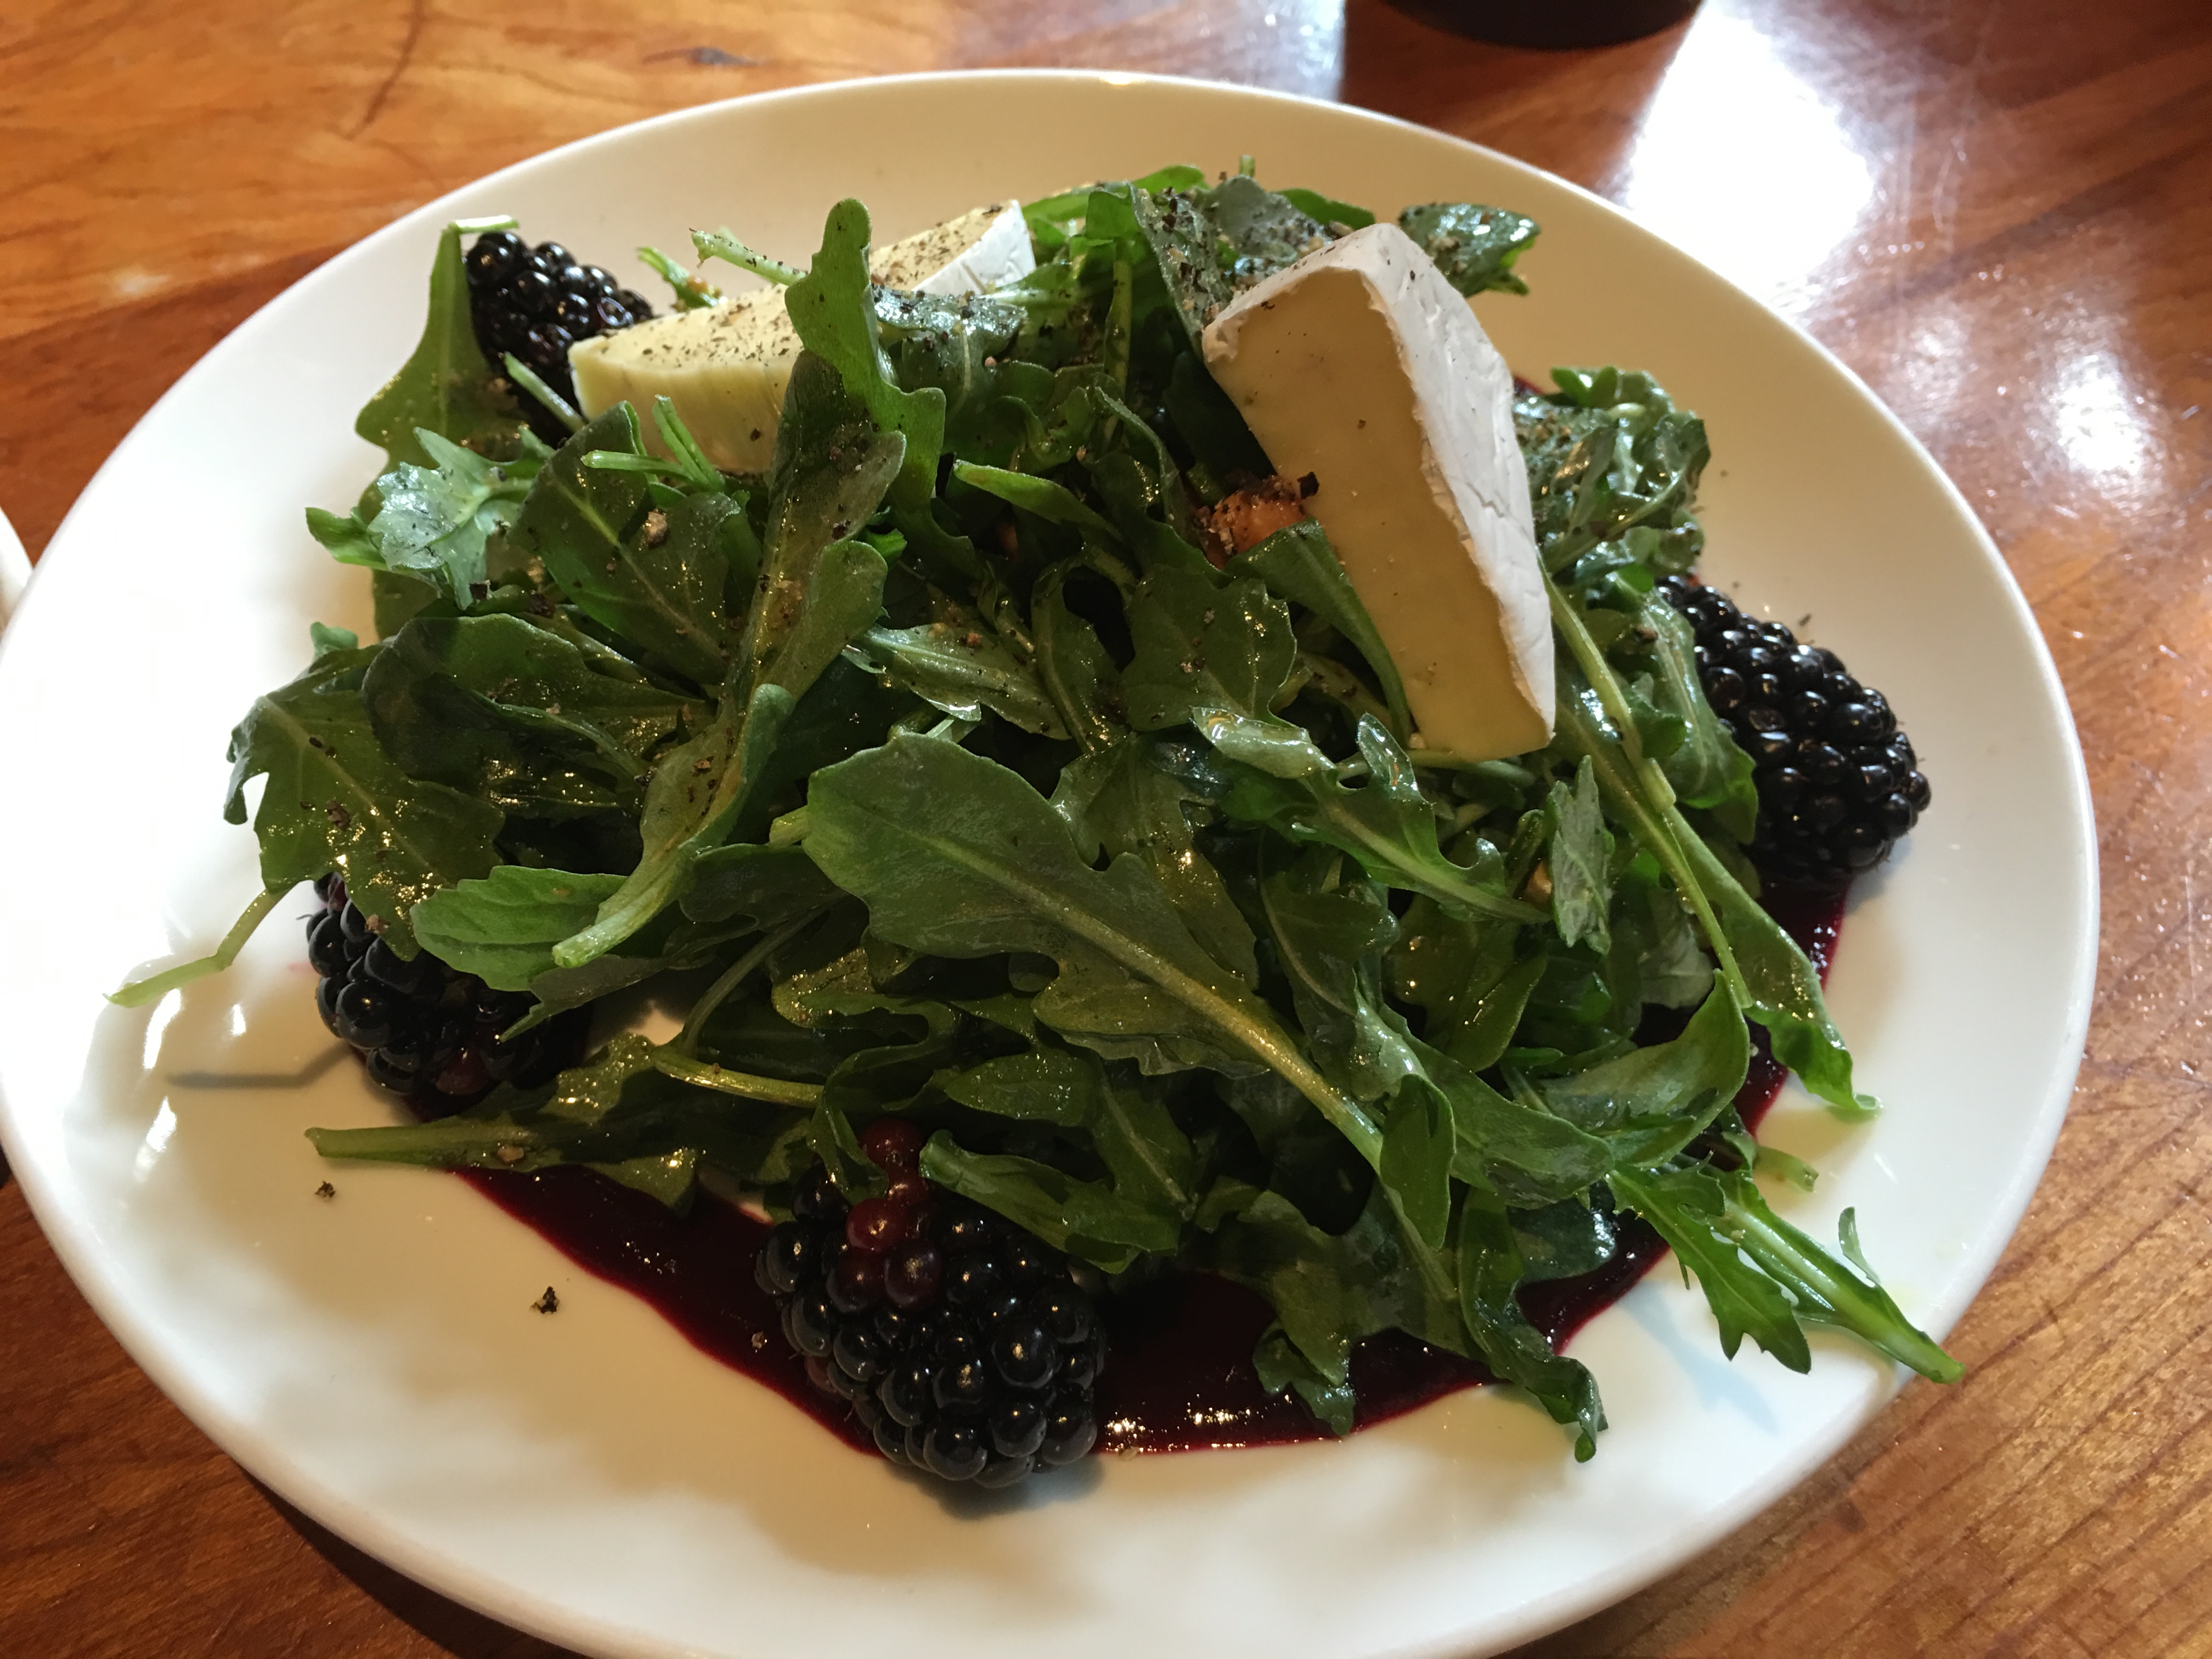 Arugula Blackberry Salad